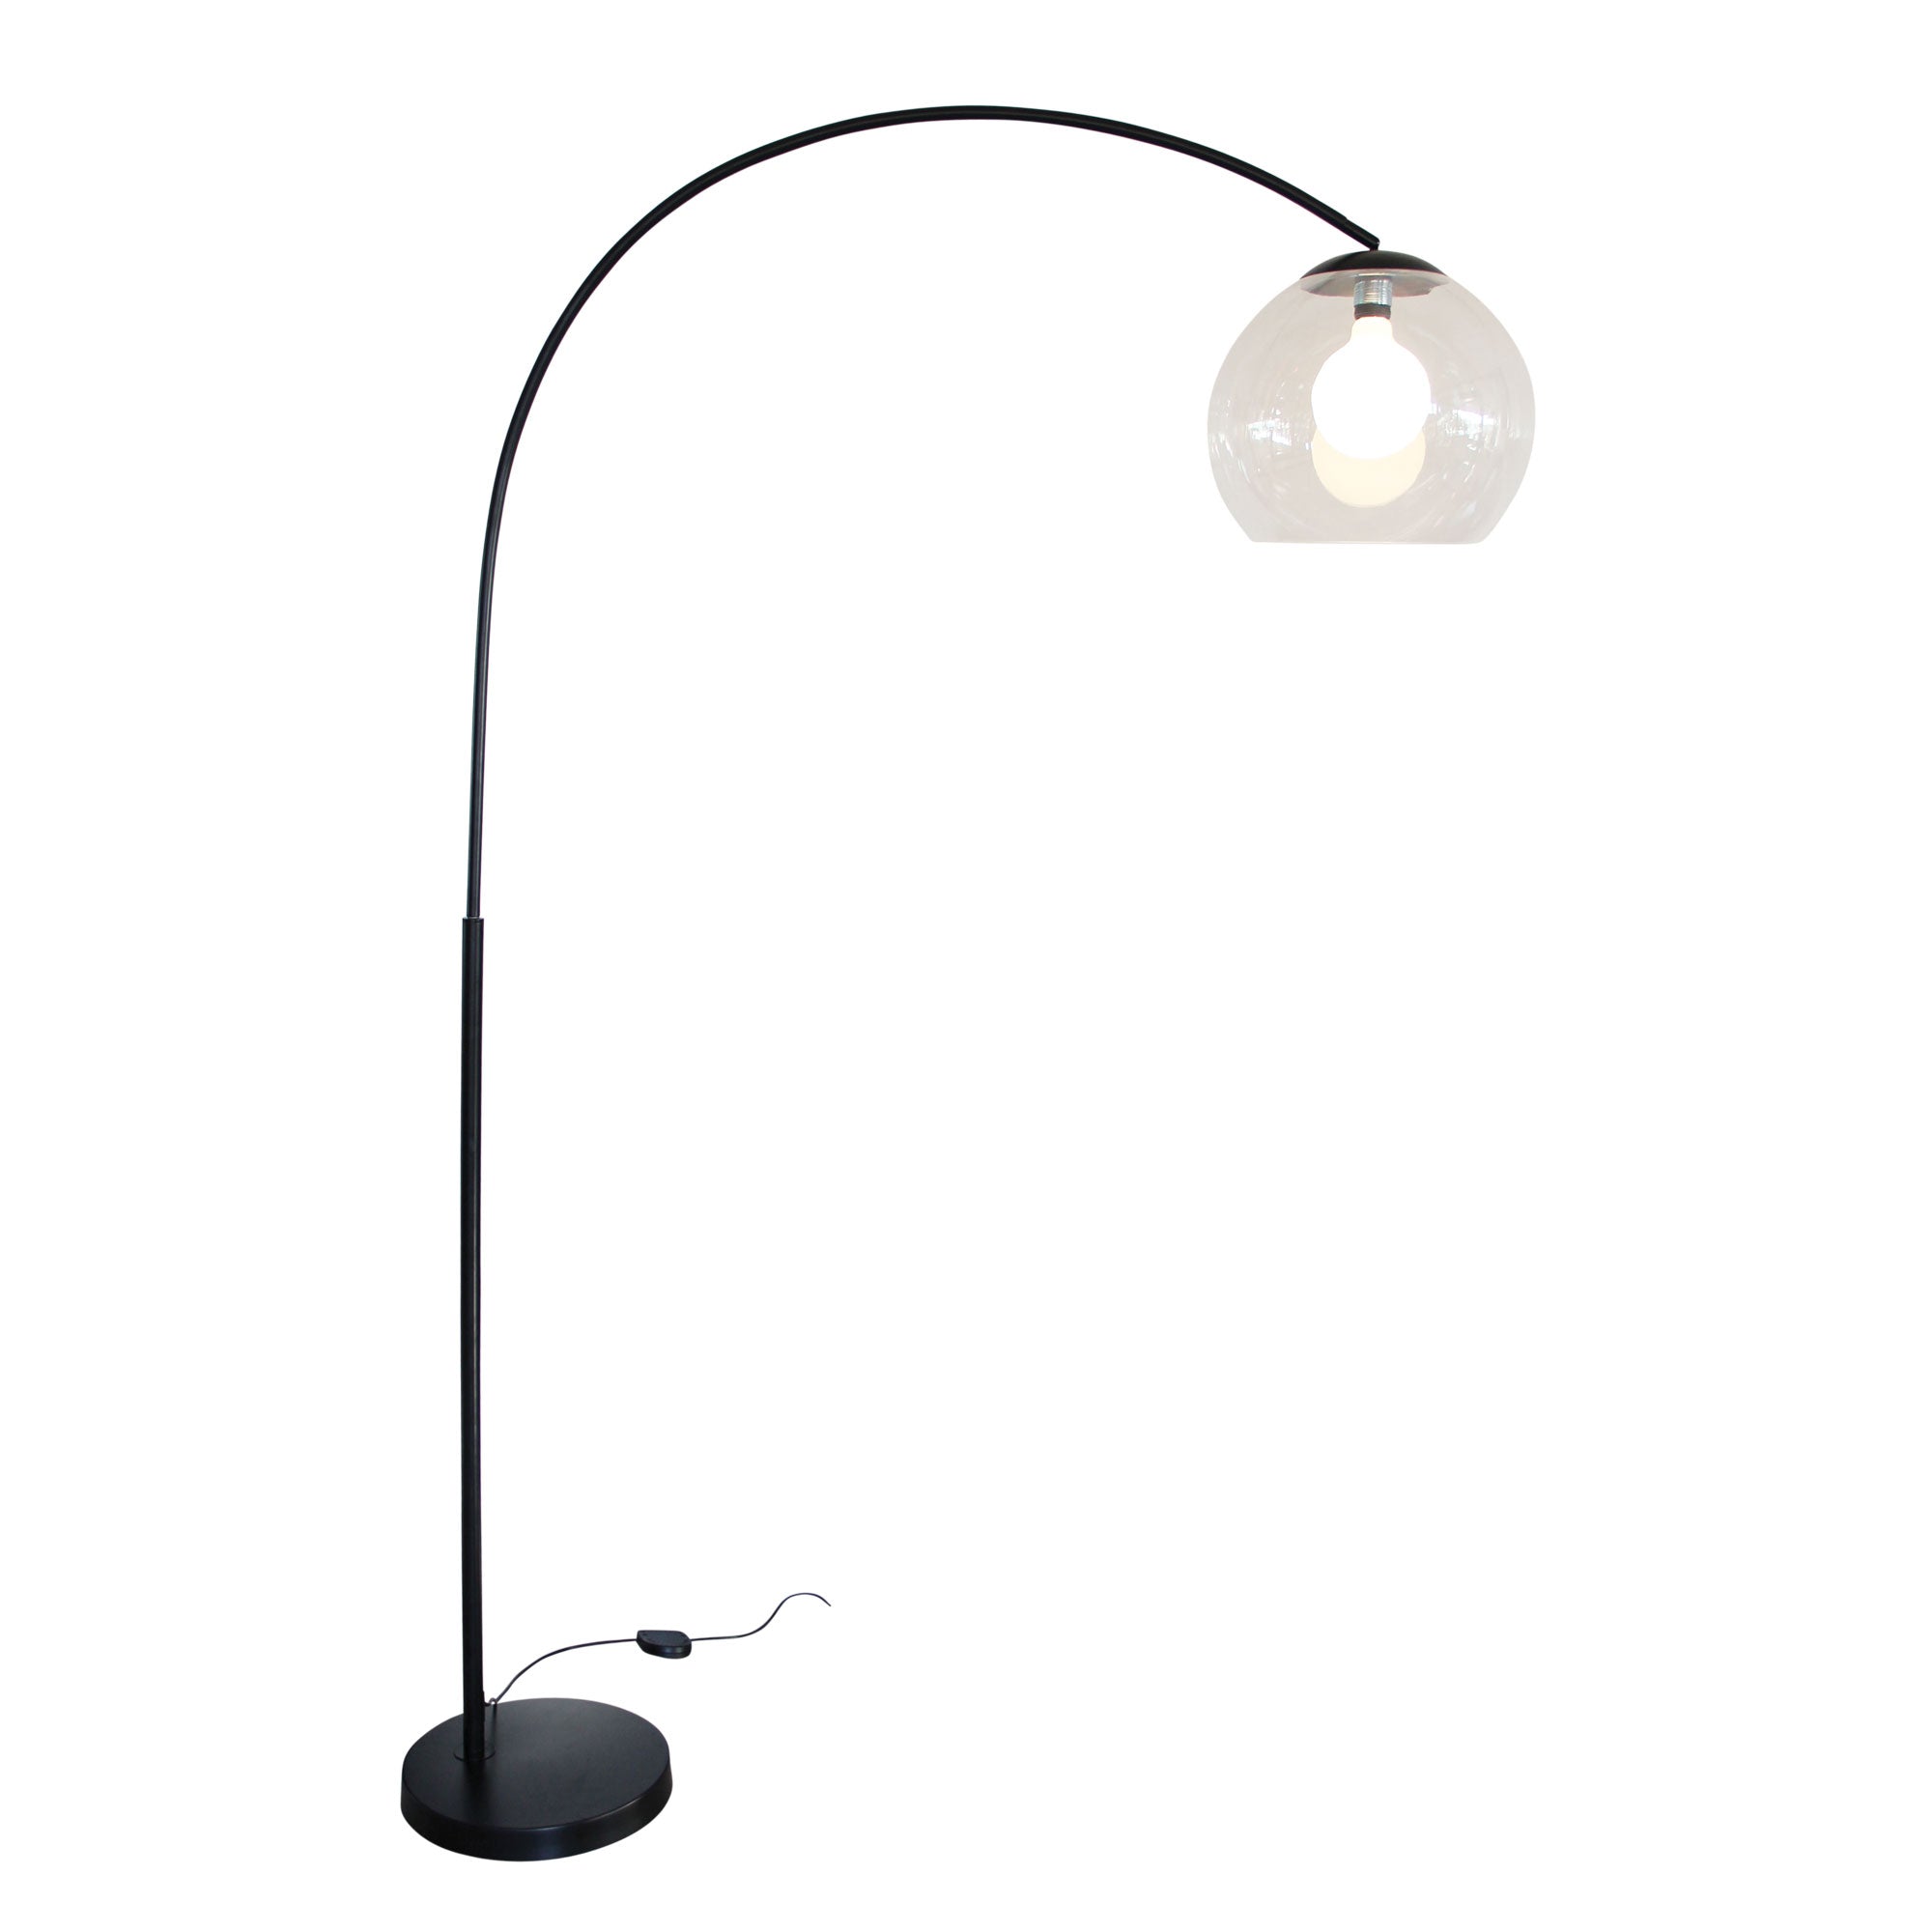 Over 1 Light Floor Lamp Arc Black With Acrylic Shade - SL91207BK